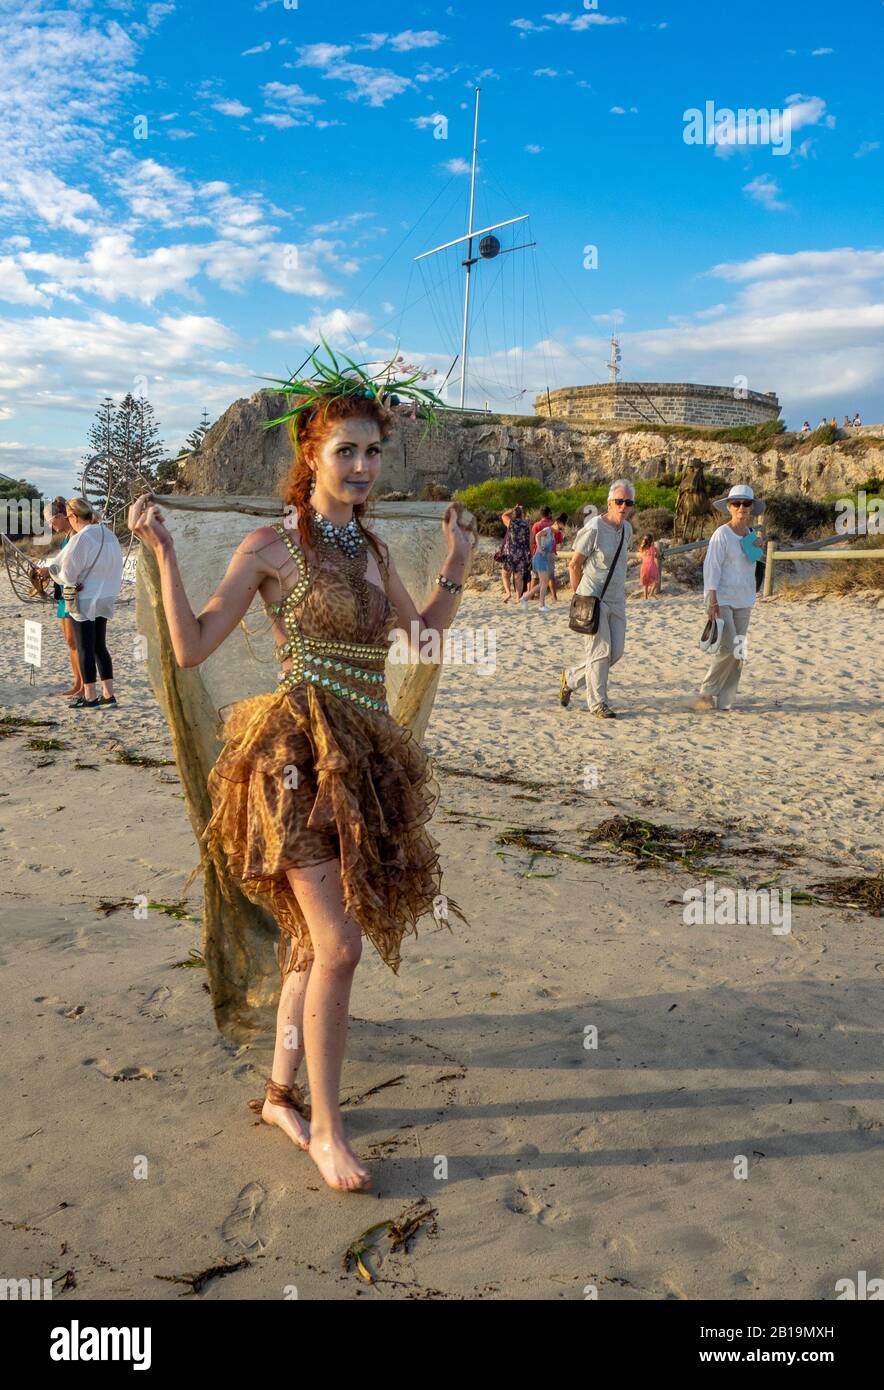 Femme cosplay costume habillé comme une fée marchant sur le sable à Bathers Beach Fremantle Australie occidentale. Banque D'Images